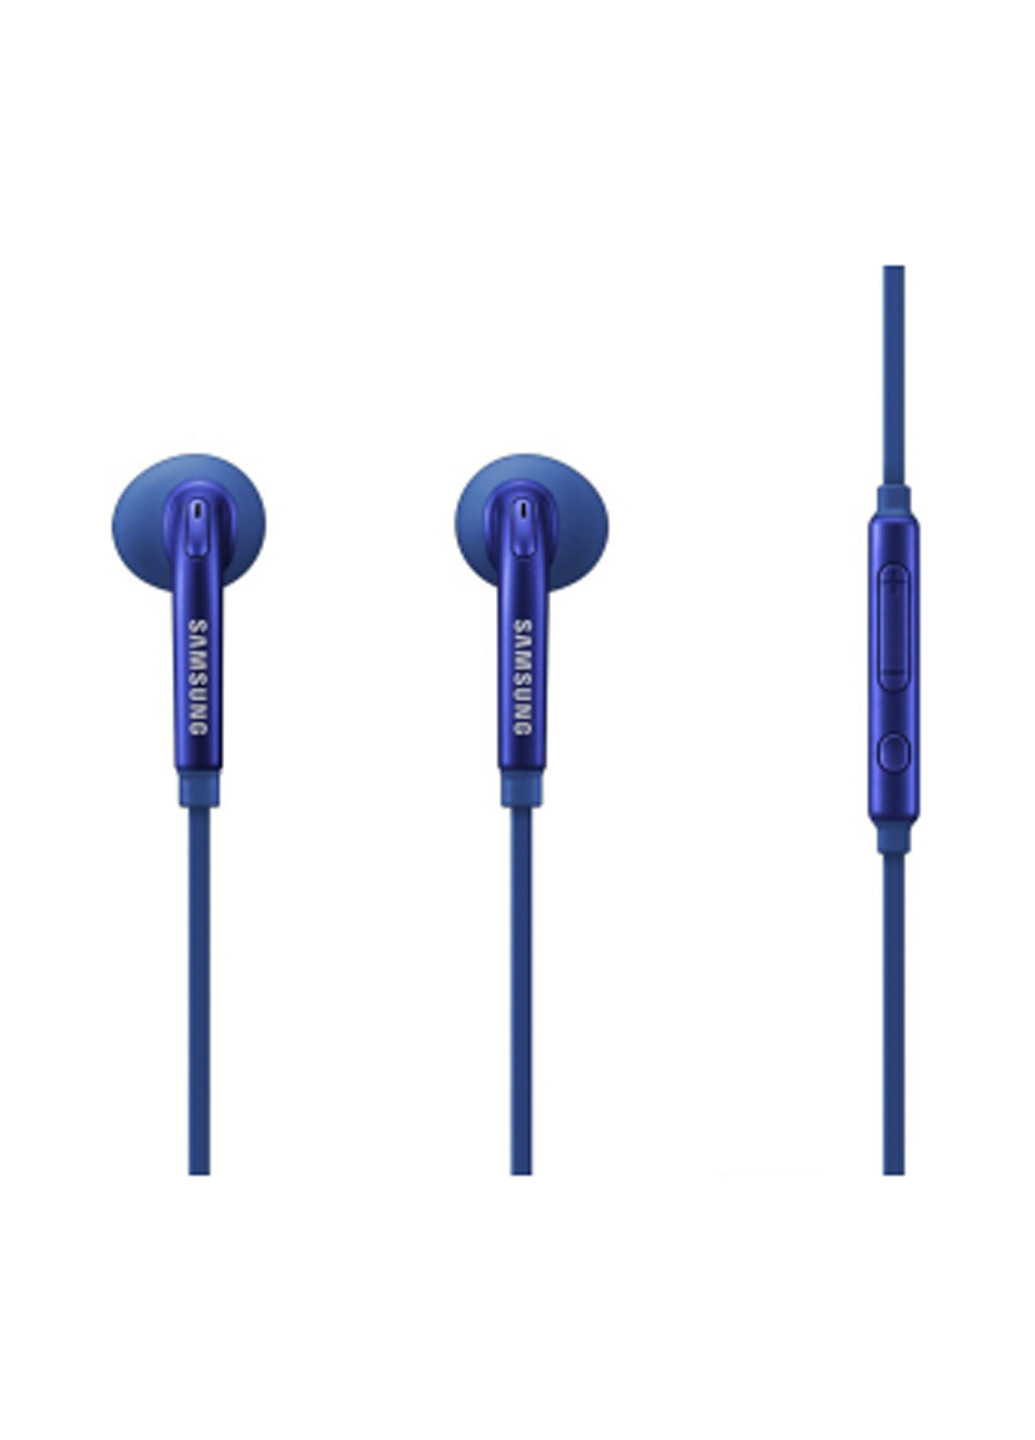 Навушники EO-EG920L Блакитний Samsung eo-eg920l голубой (135029195)